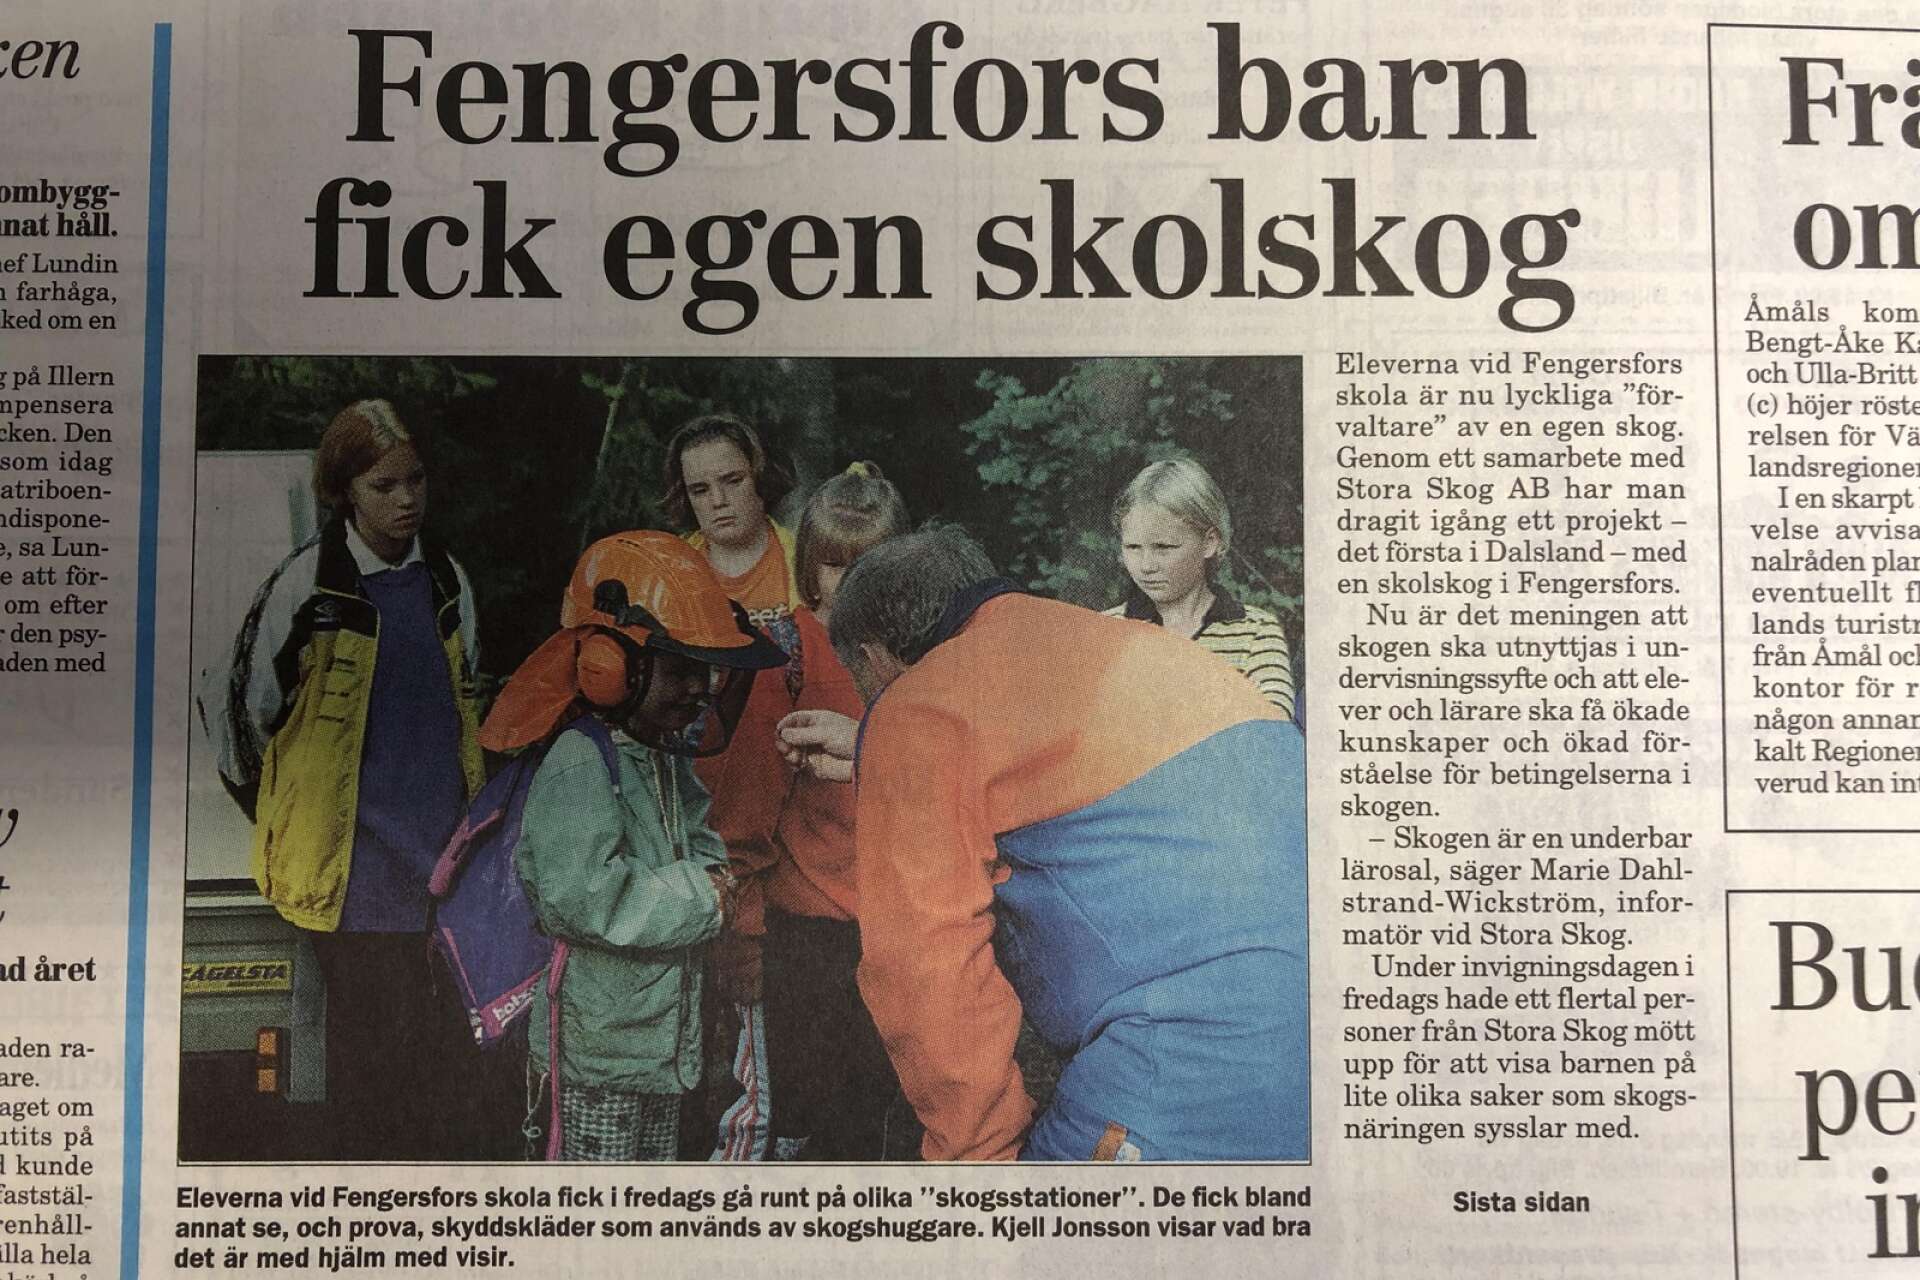 Kjell Jonsson låter skolbarnen i Fengersfors prova skyddshjälm med visir då barnen fick egen skog att ”förvalta” för 25 år sedan.